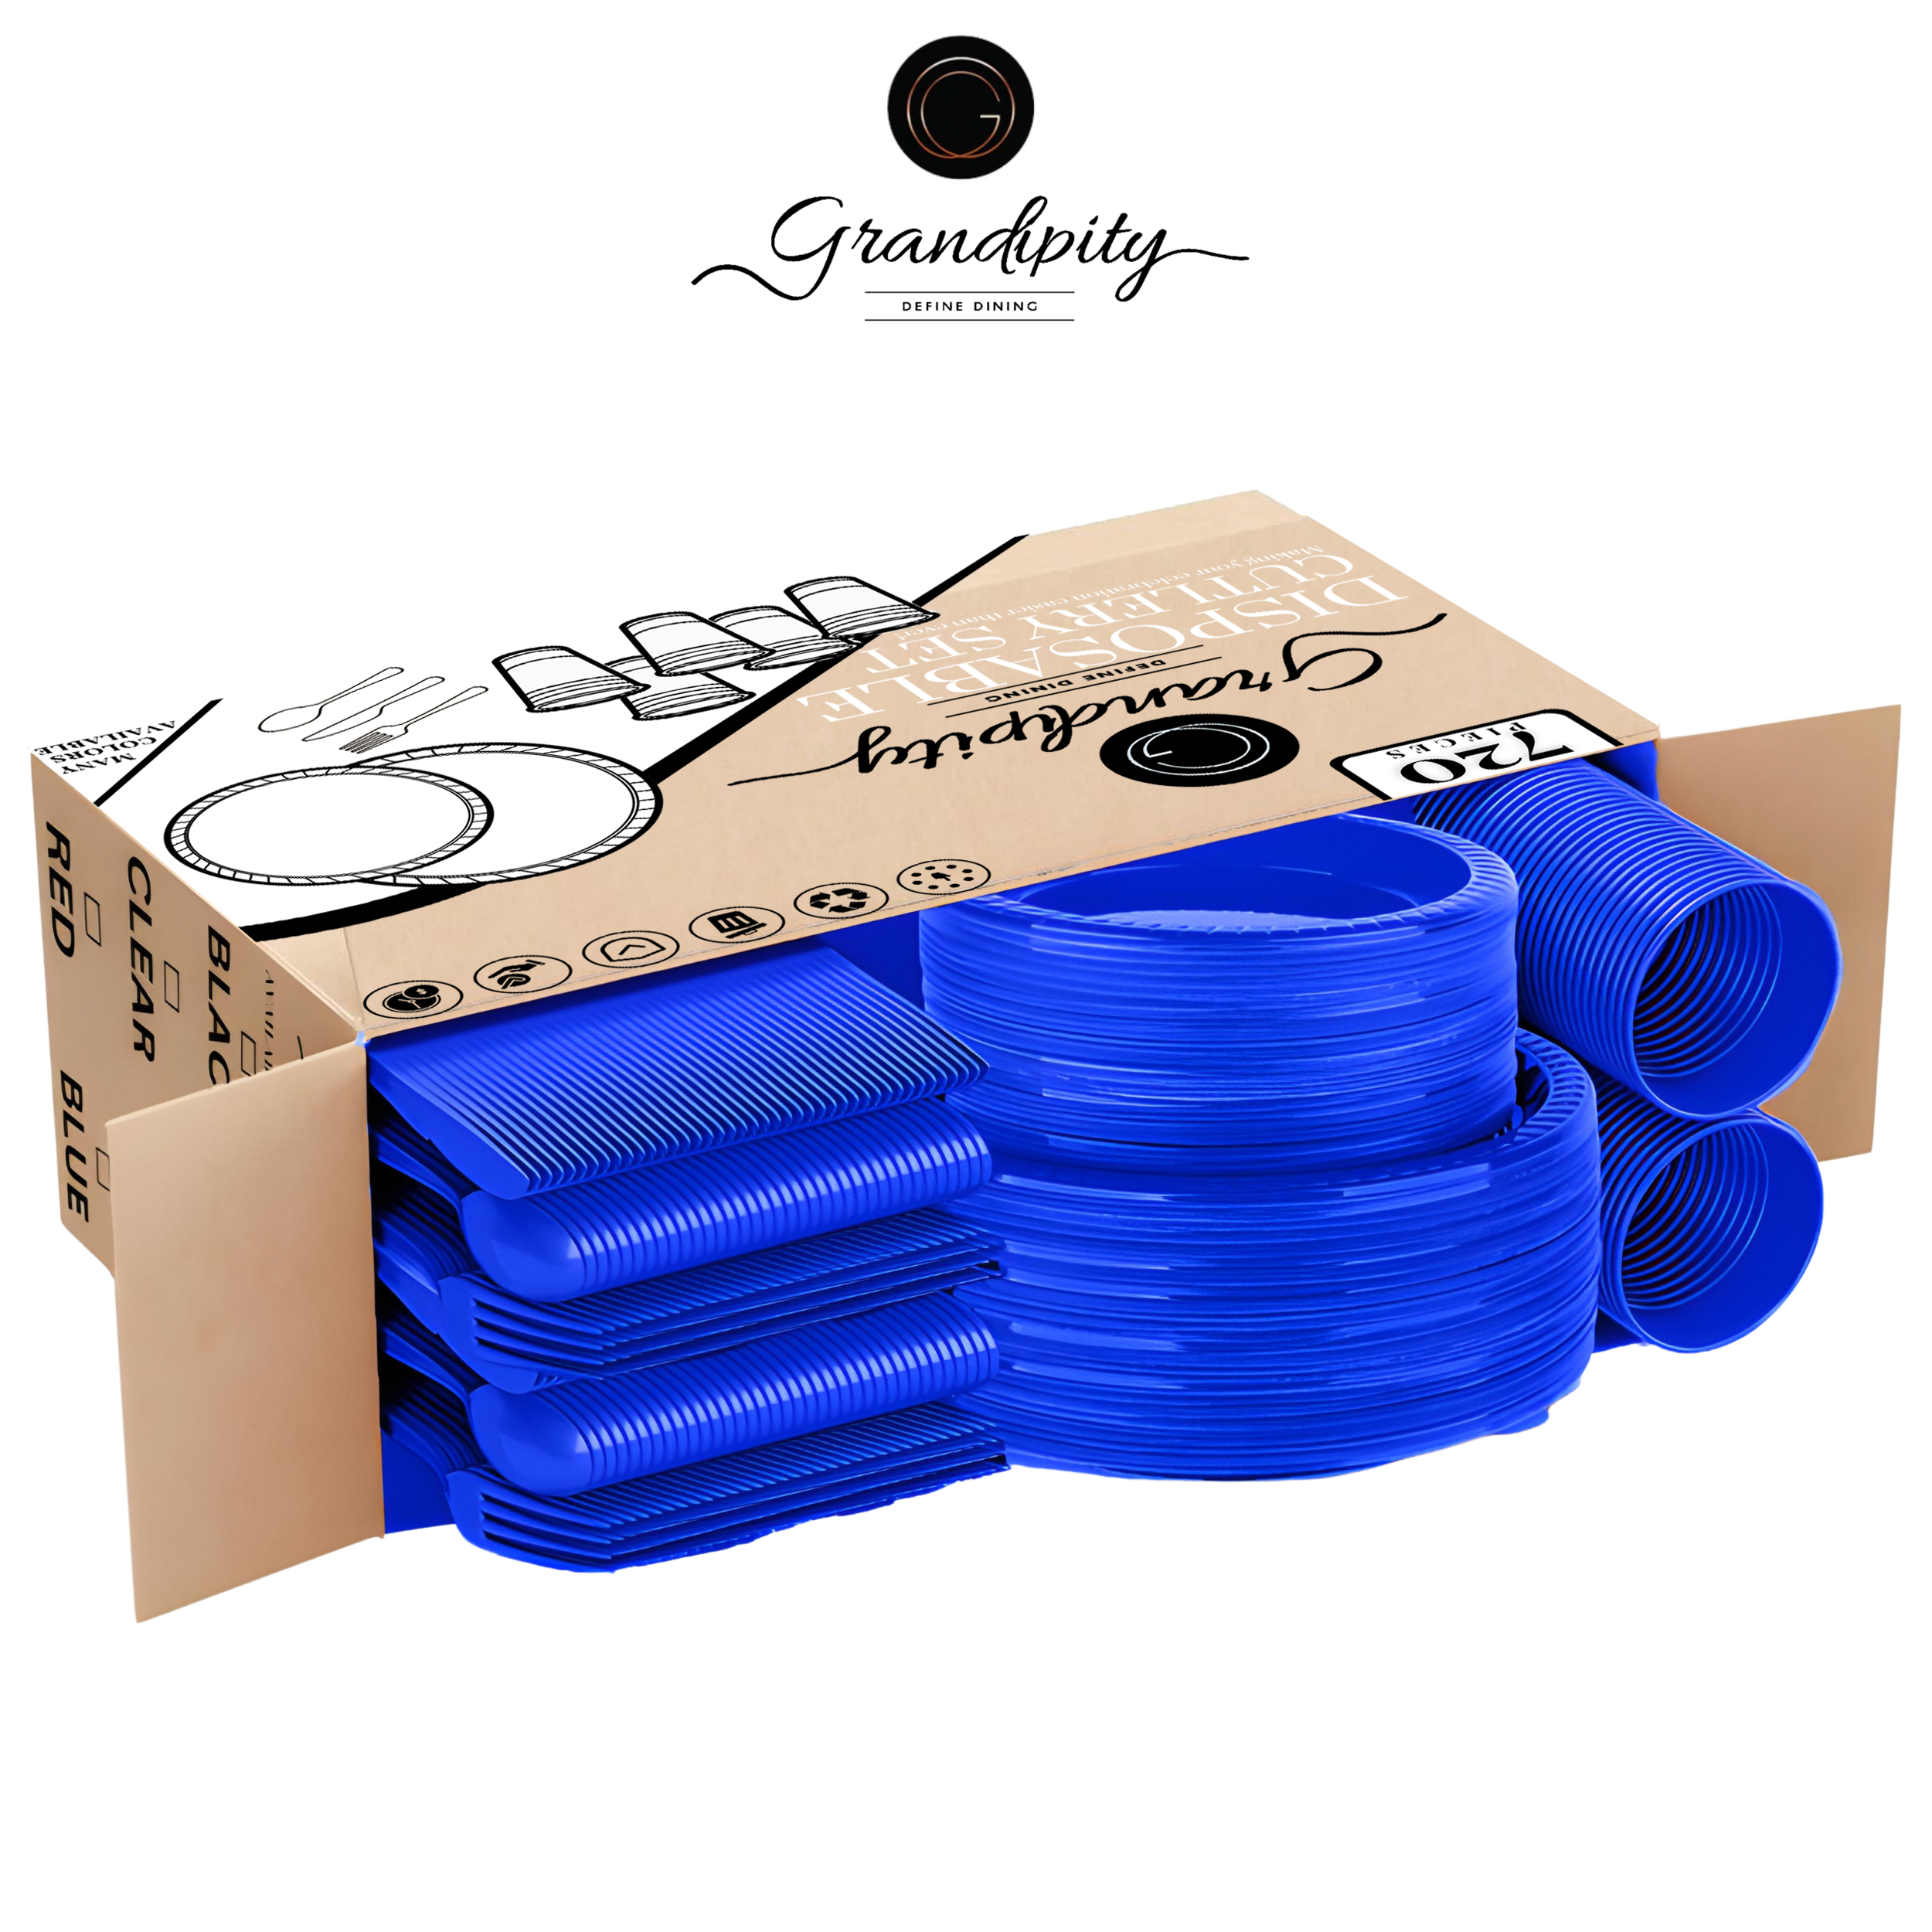 720 Pcs Blue Party Plastic Dinnerware Set